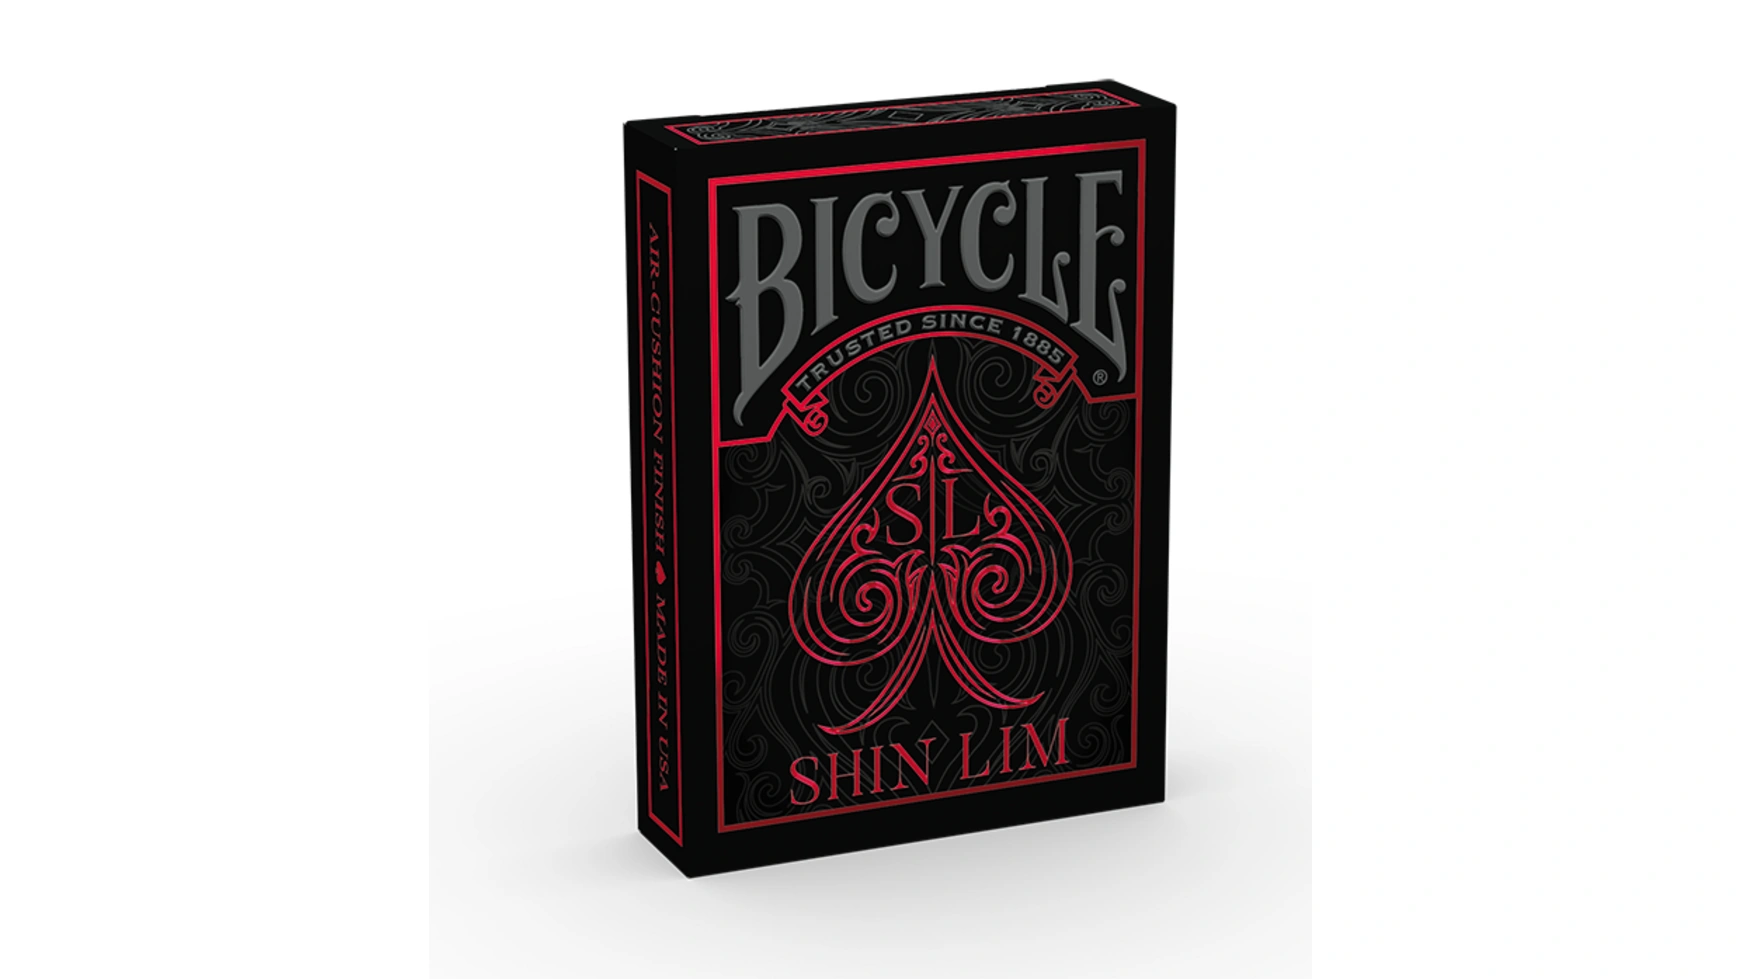 маленькая дверь от roddy mcghie карточка волшебные трюки трюки иллюзии магические реквизиты волшебники уличный магизм сила колода Bicycle Шин Лим